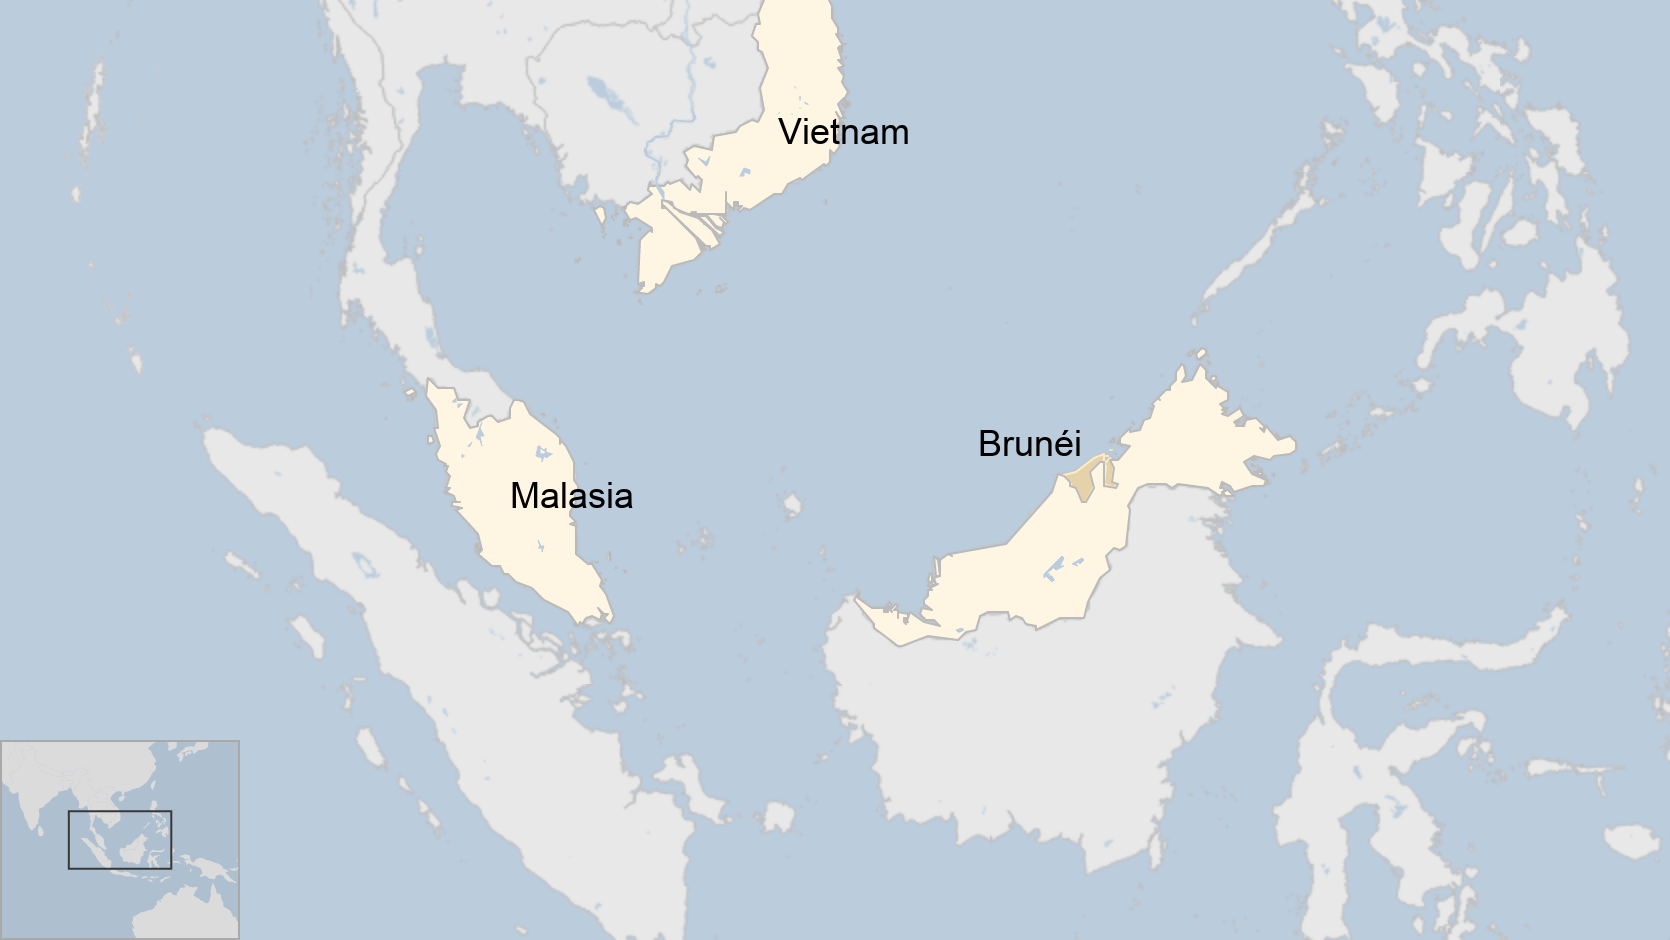 Mapa del sudeste asiático donde se muestra Brunéi